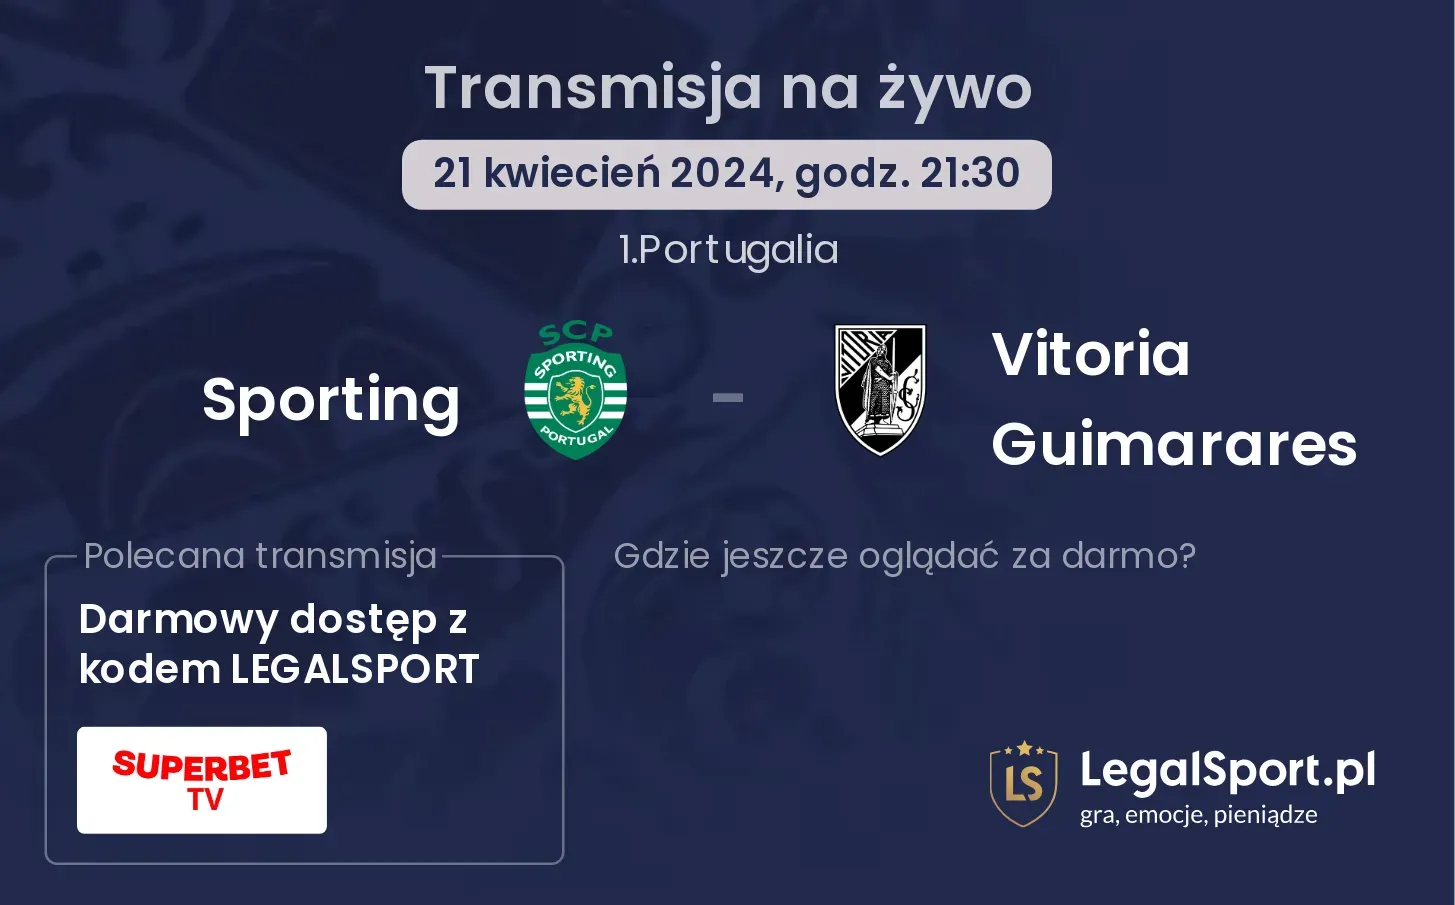 Sporting - Vitoria Guimarares transmisja na żywo